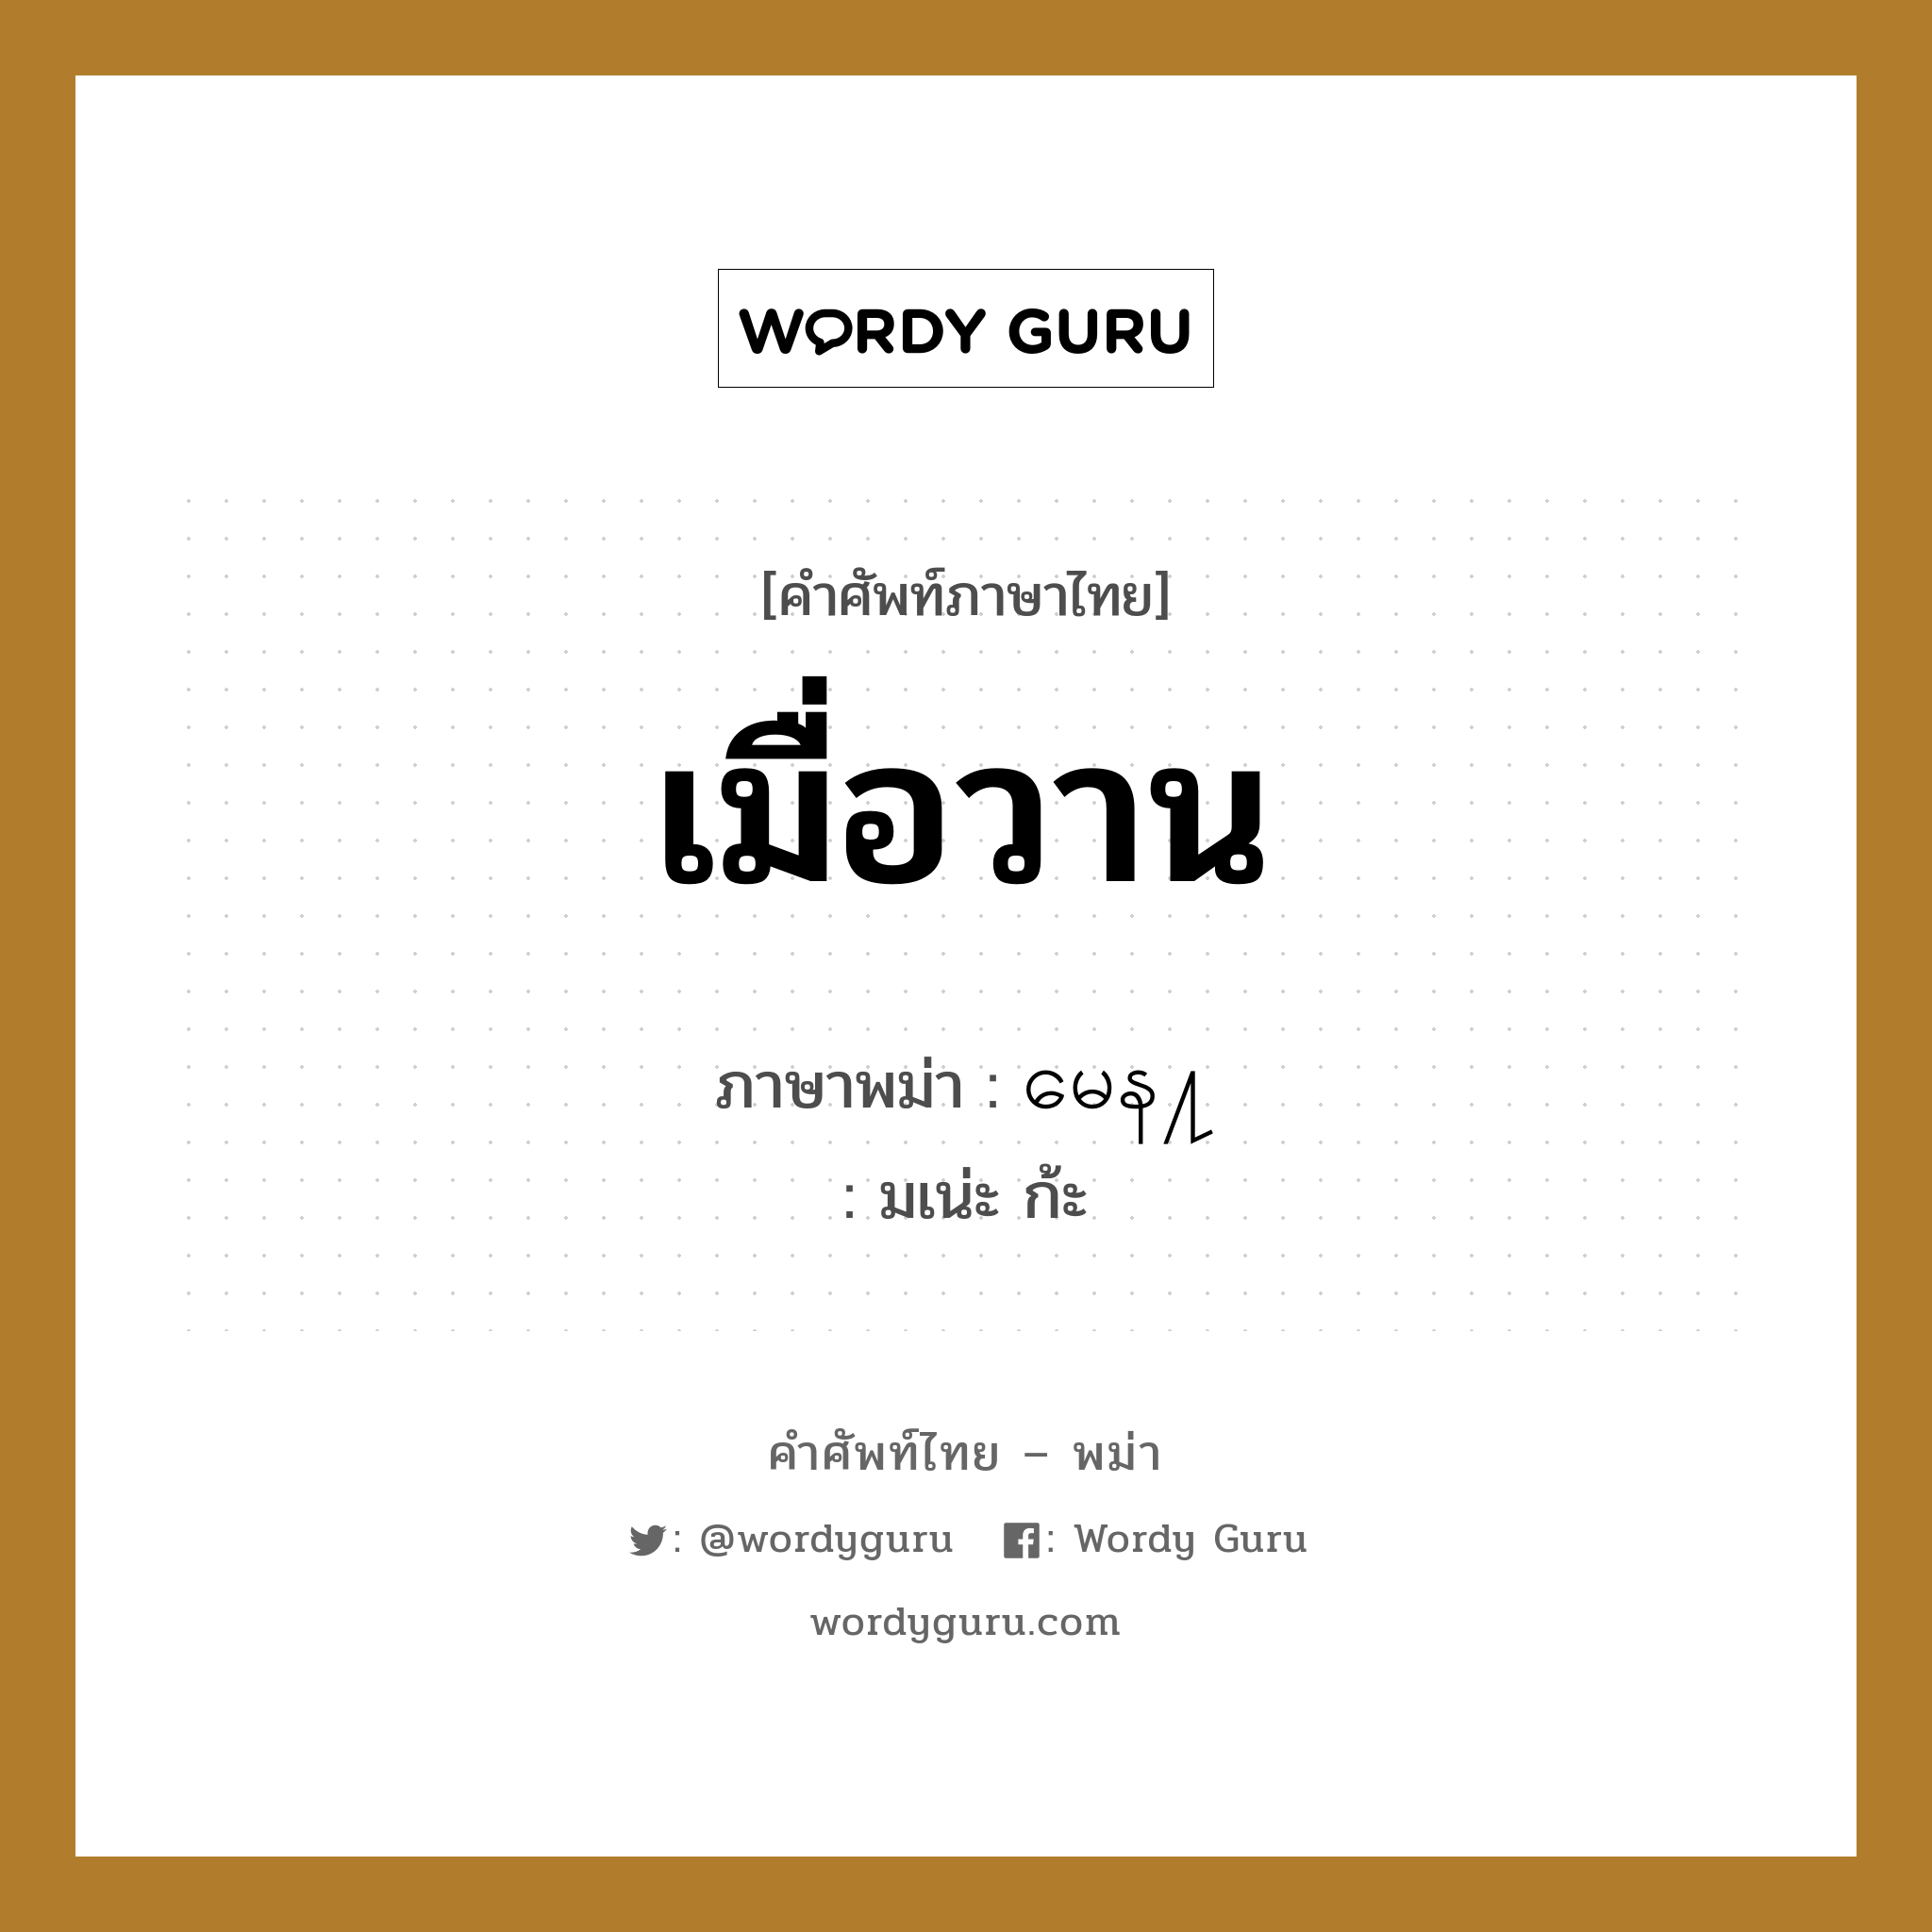 เมื่อวาน ภาษาพม่าคืออะไร, คำศัพท์ภาษาไทย - พม่า เมื่อวาน ภาษาพม่า မေန႔ หมวด หมวดวัน เวลา มเน่ะ ก้ะ หมวด หมวดวัน เวลา